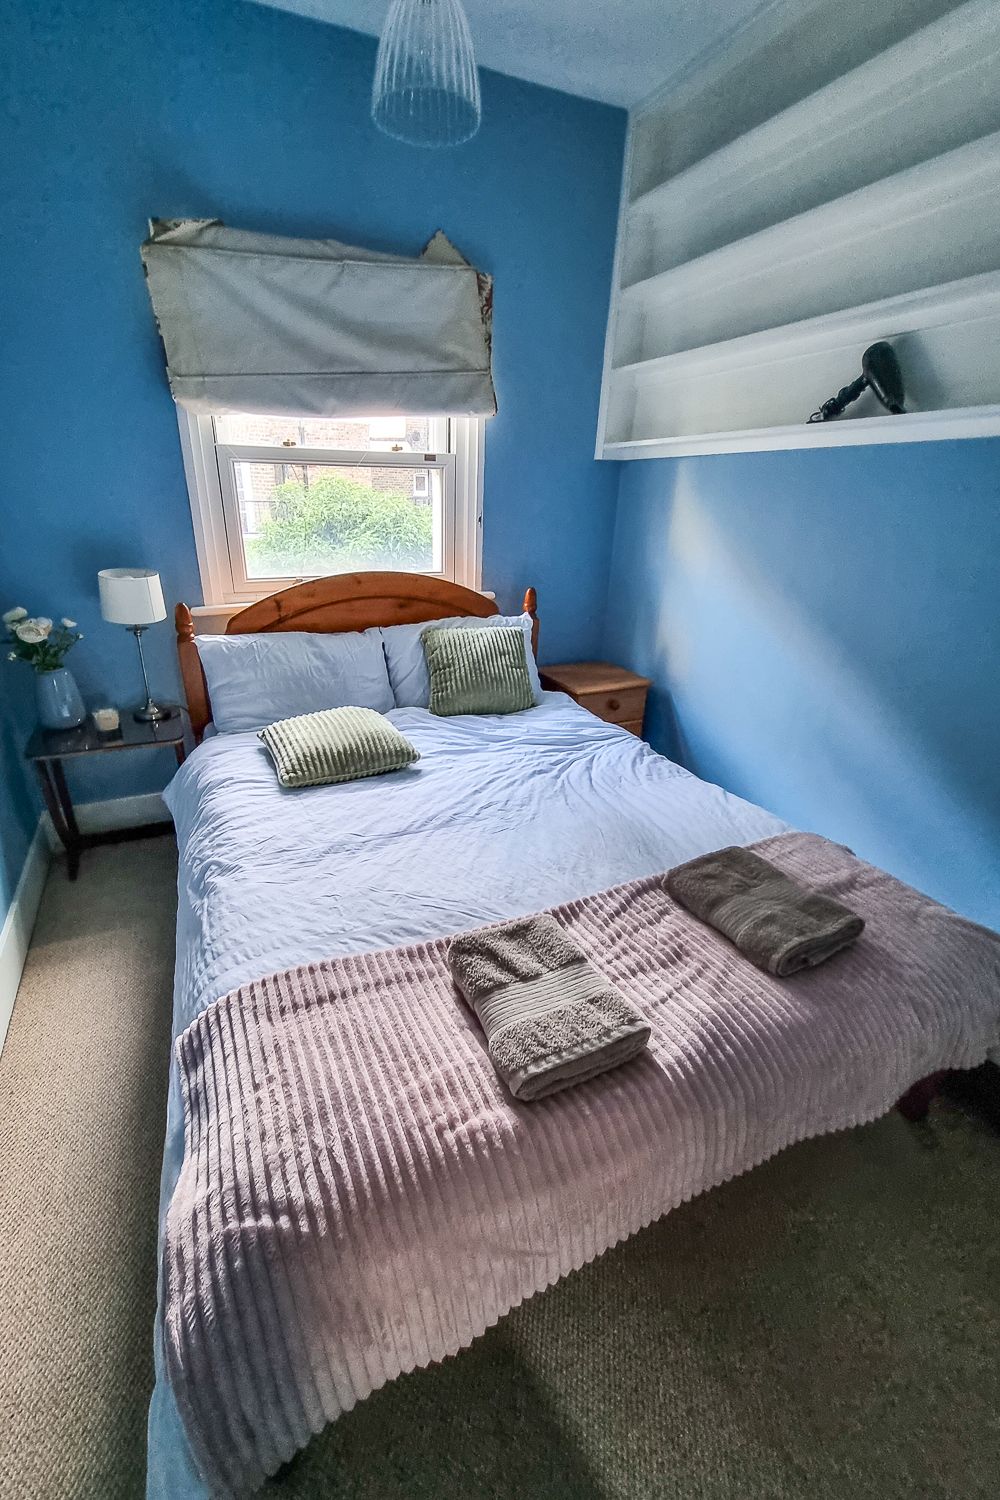 Airbnb-kohde Lontoosta + toiveita lomakotien vuokraajille